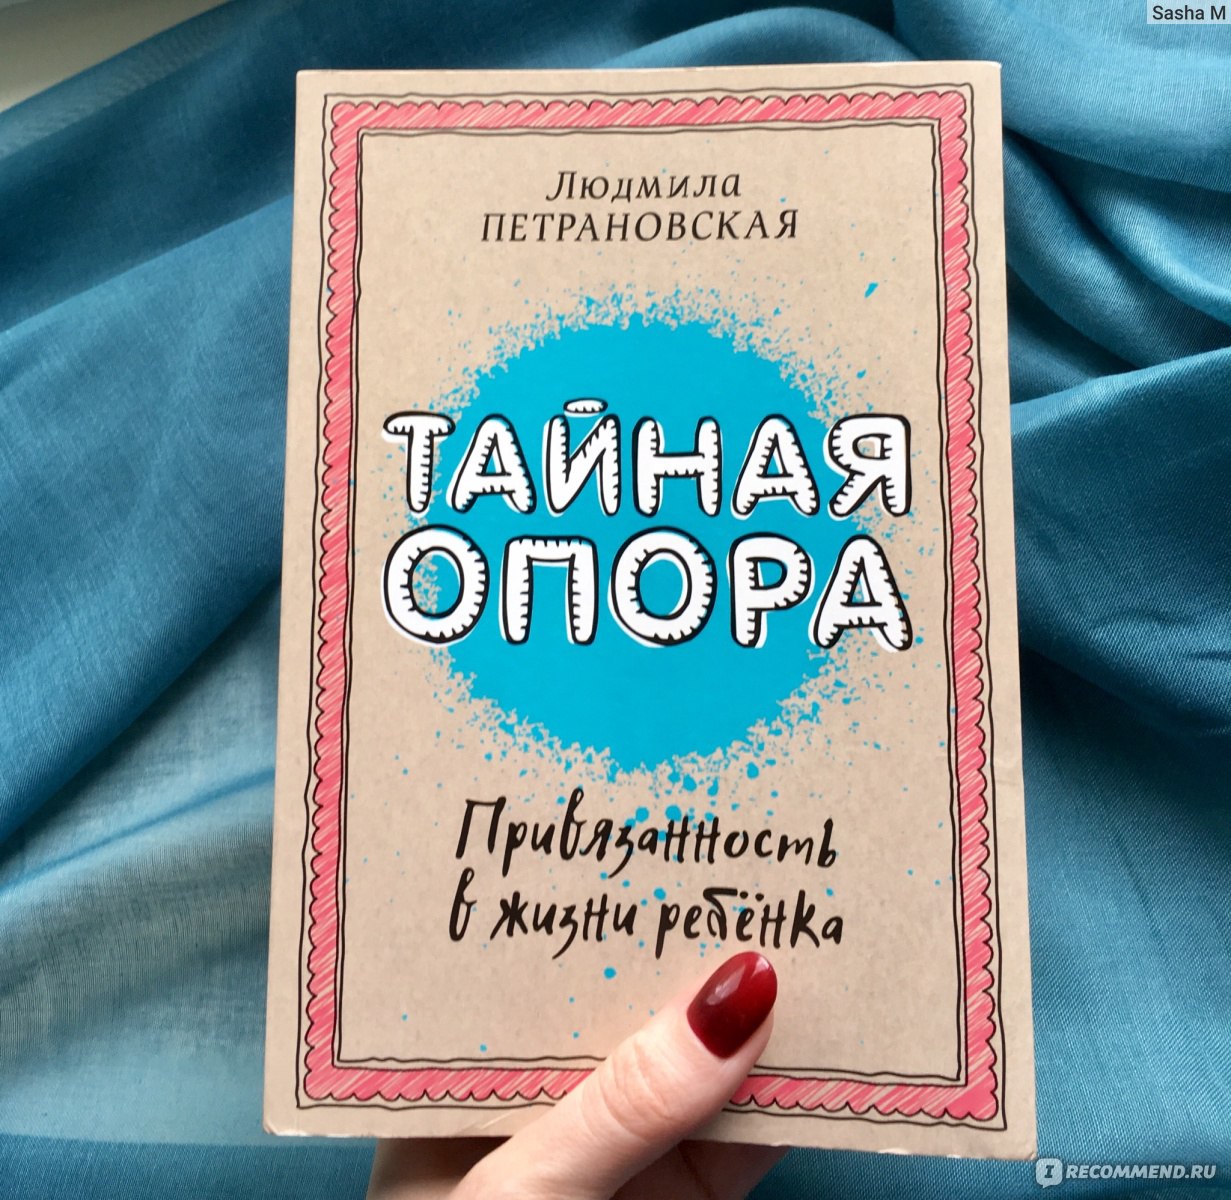 Книга петрановской тайны опоры. Тайная привязанность Петрановская.